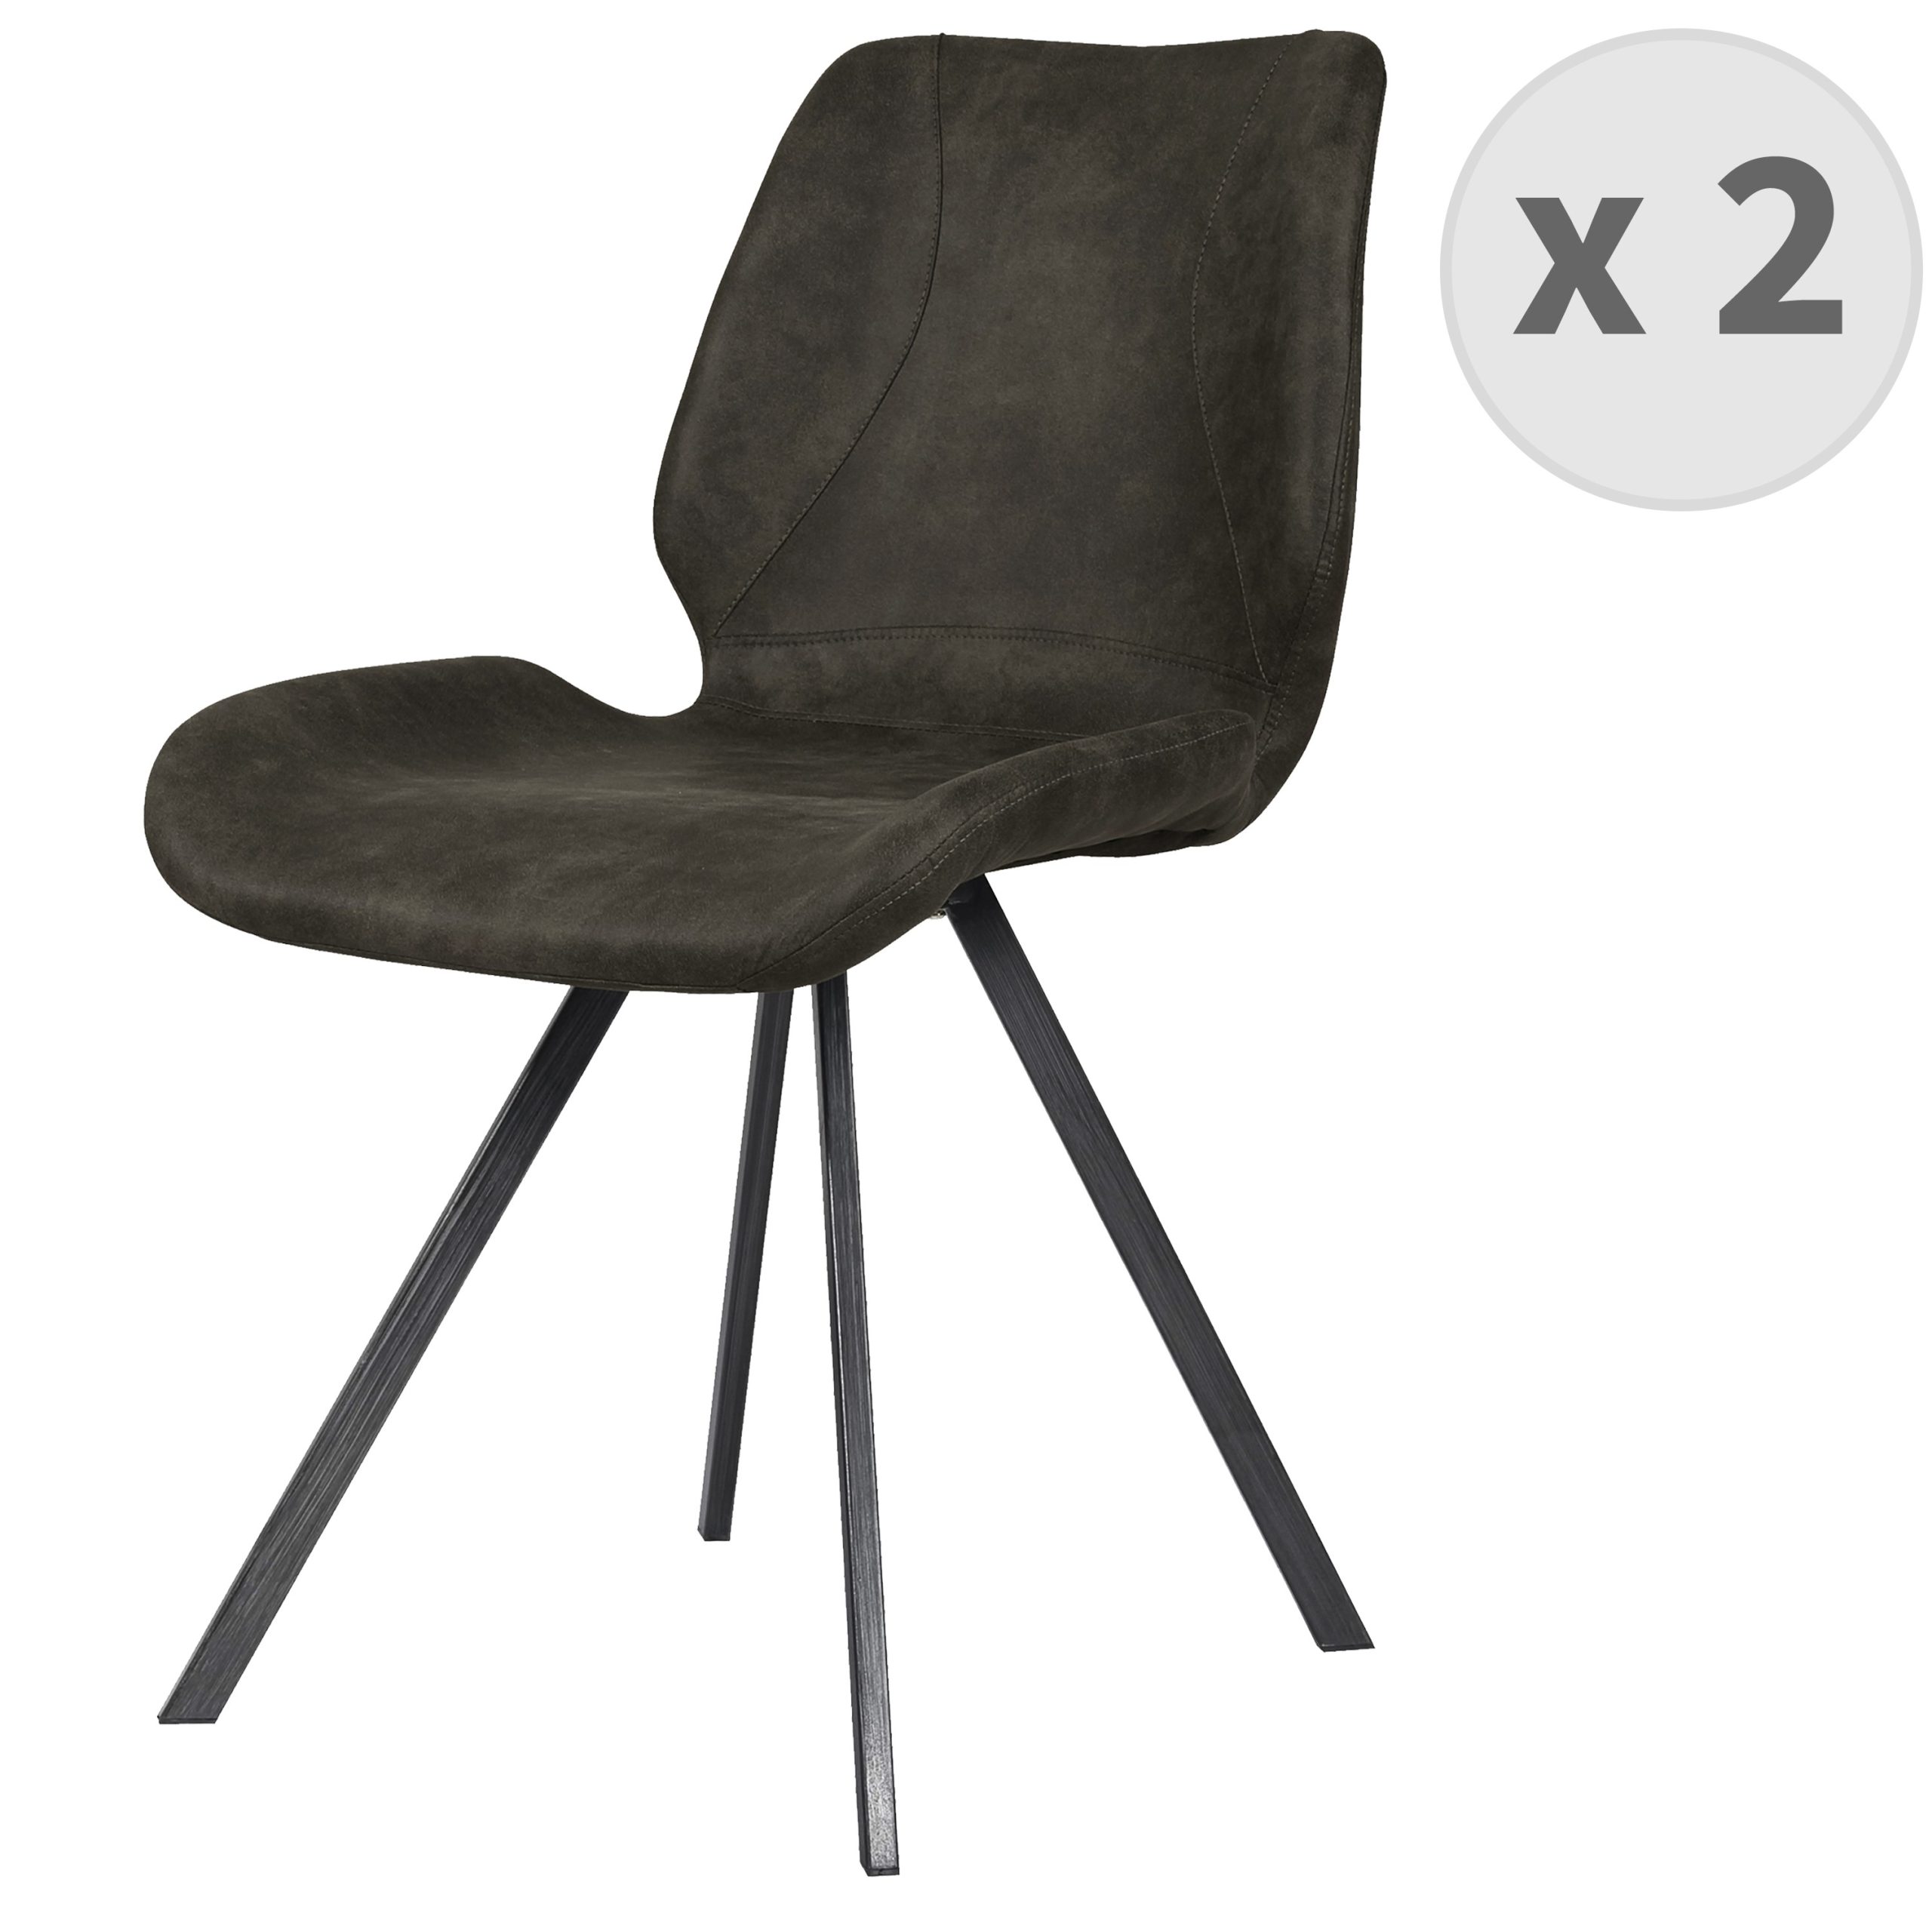 Chaise industrielle micro vintage marron foncé pieds métal noir (x2)